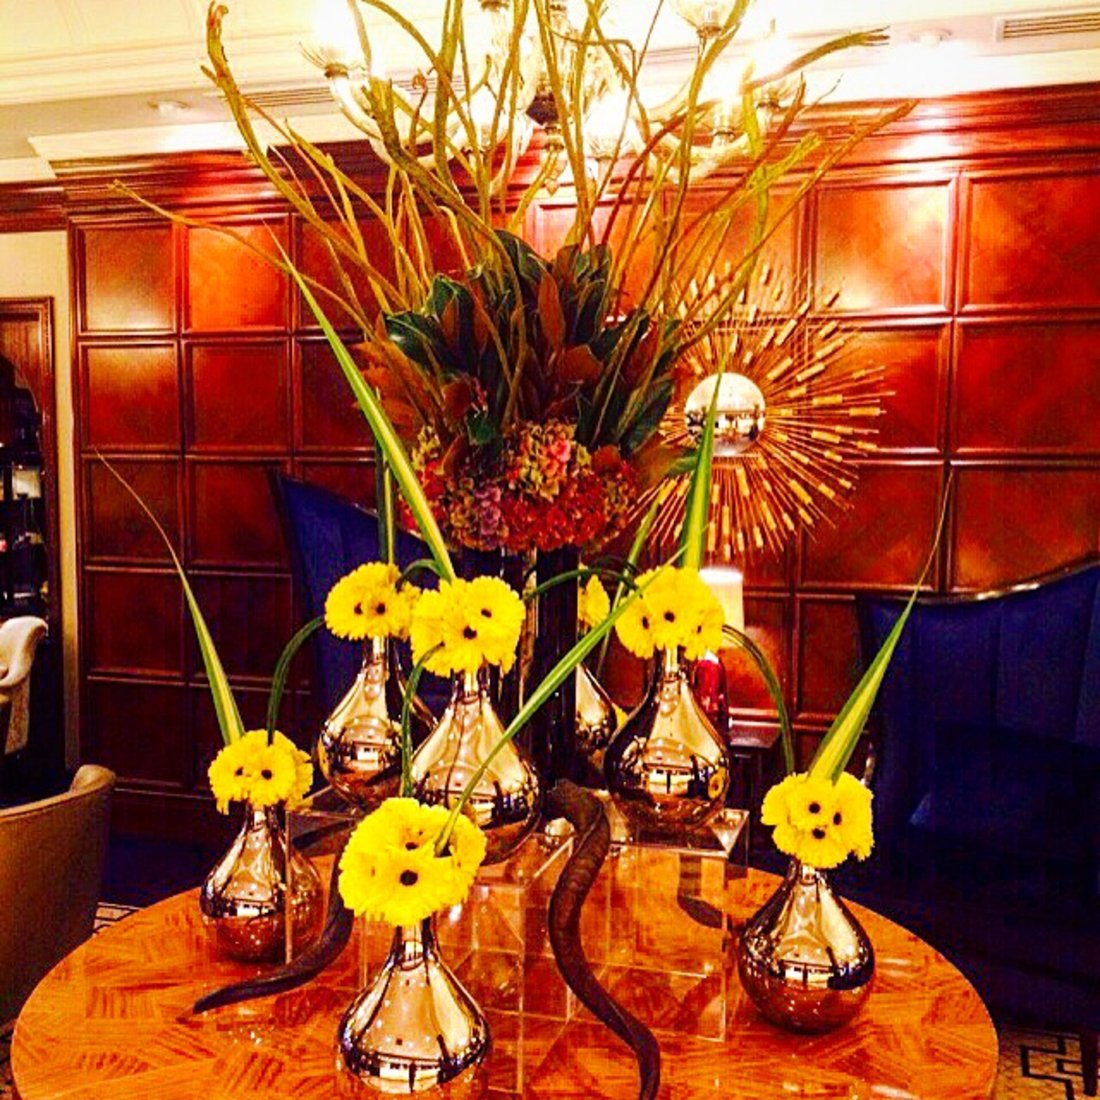 Taj-hotel-lobby-flowers-yellow